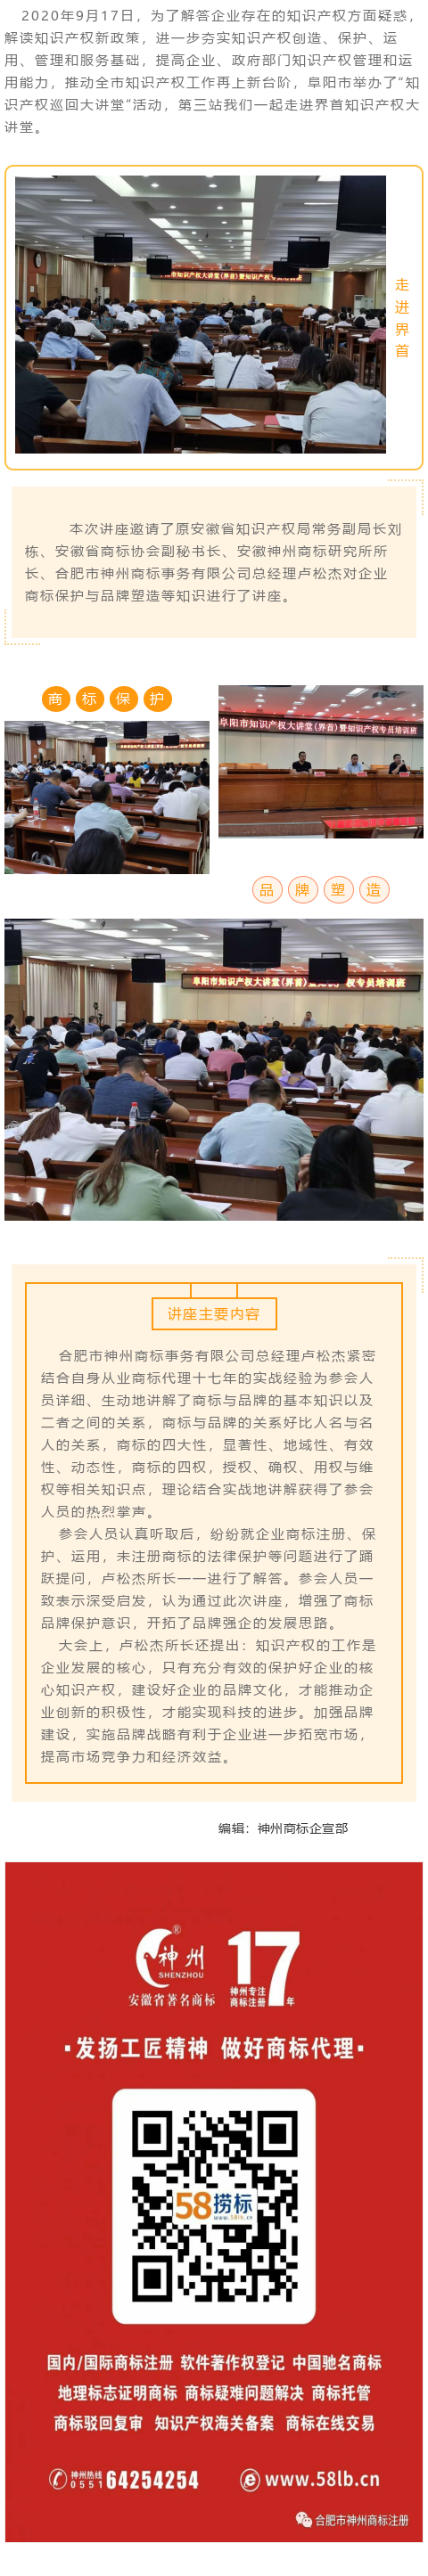 阜阳市举办知识产权巡回大讲堂——第三站界首